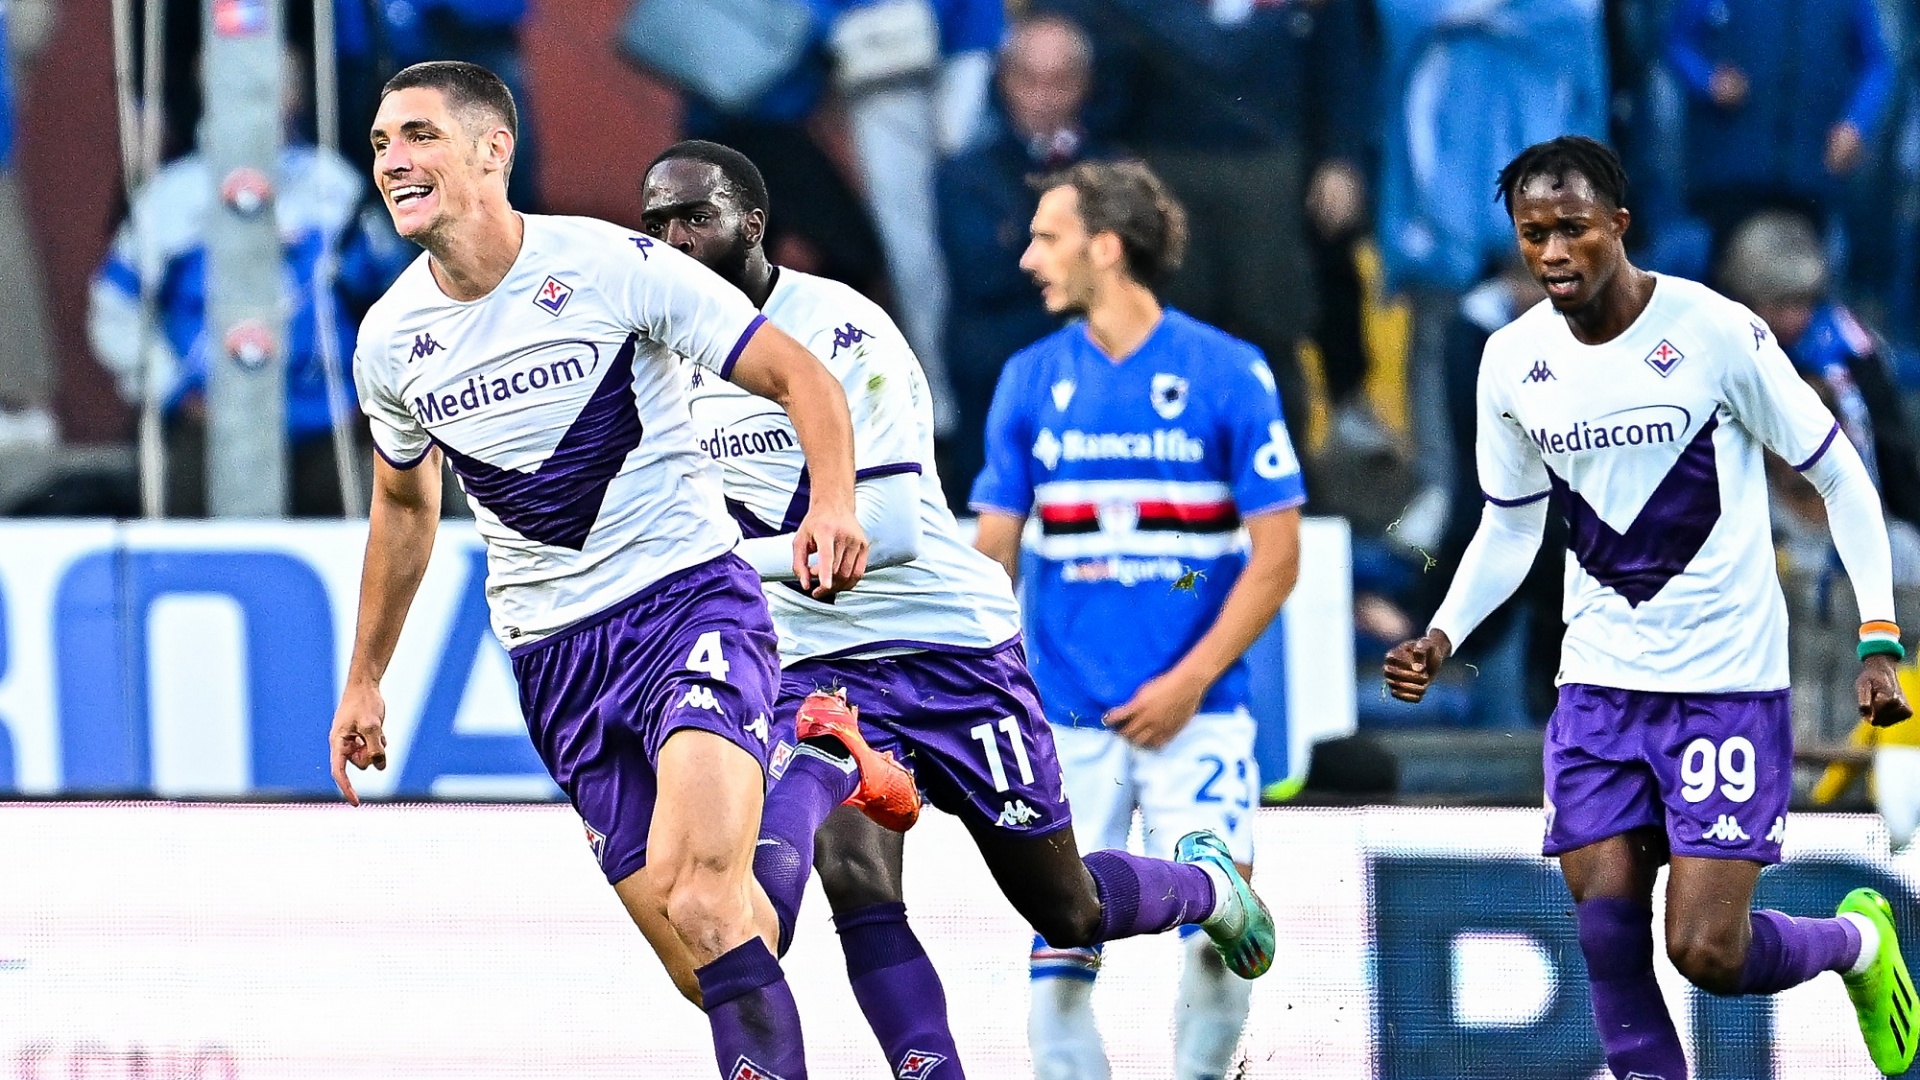 Fiorentina e Monza, vittorie per 2-0 con Samp e Verona